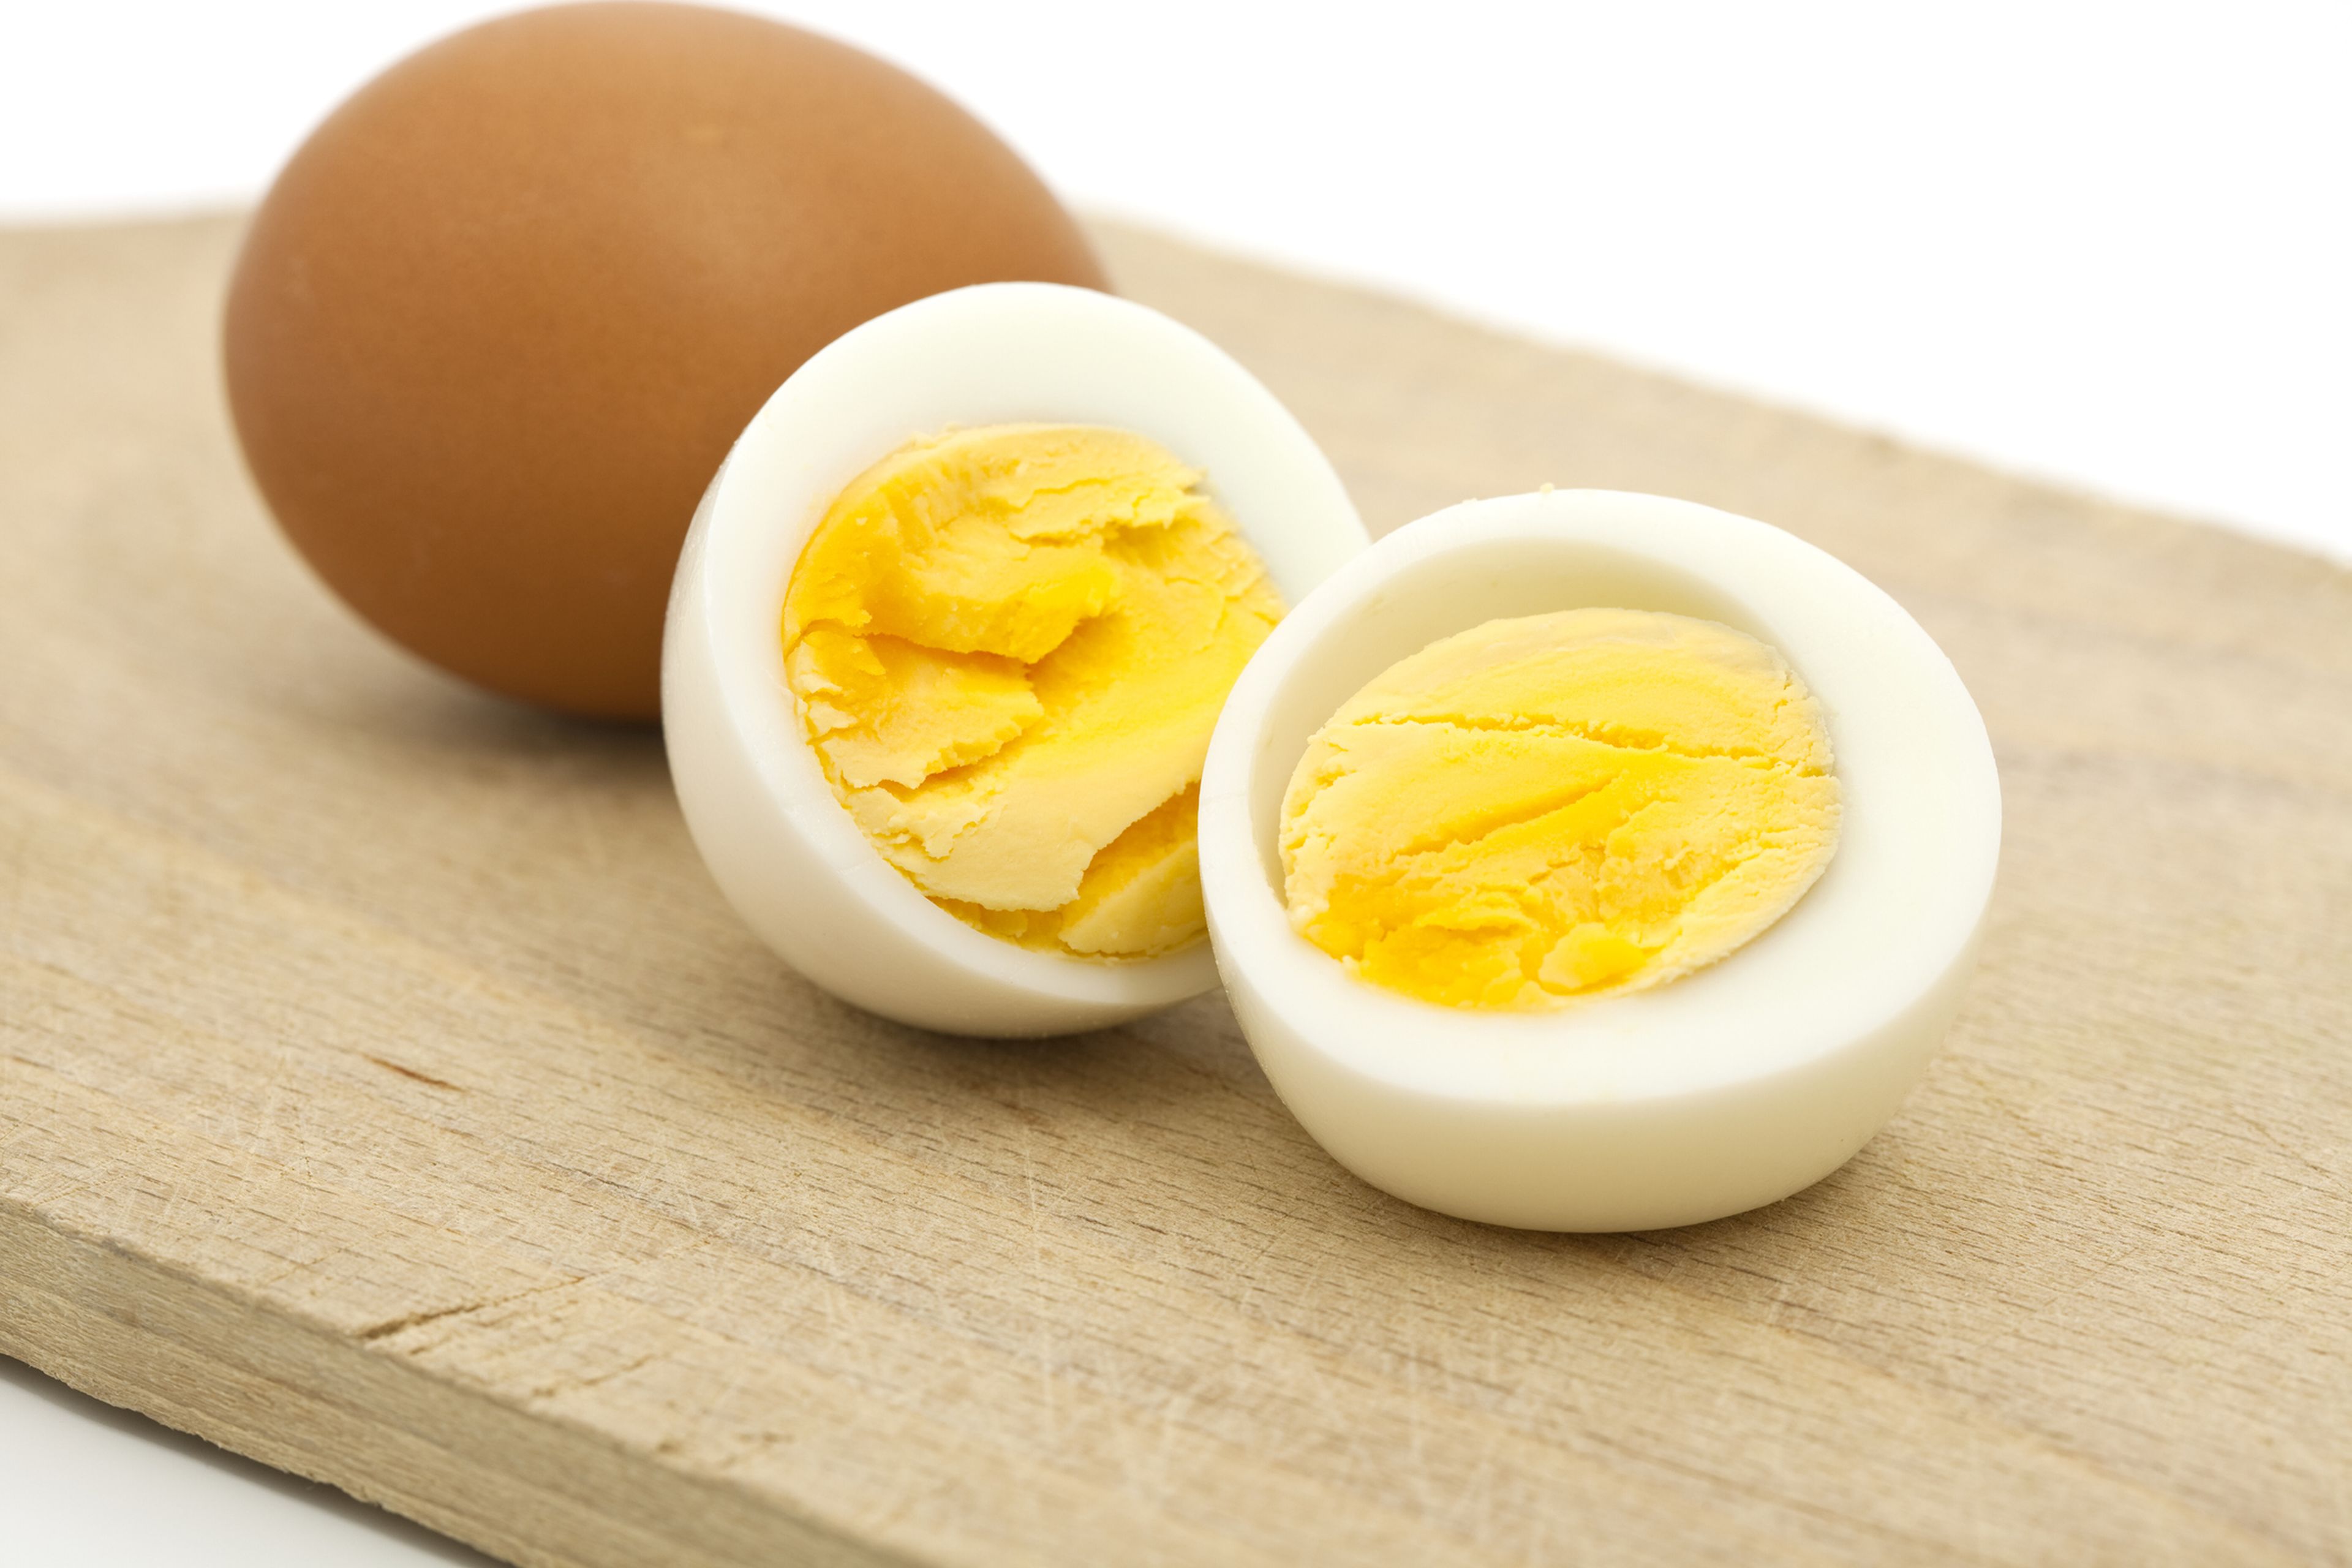 Por qué no hay que poner un huevo duro en el microondas